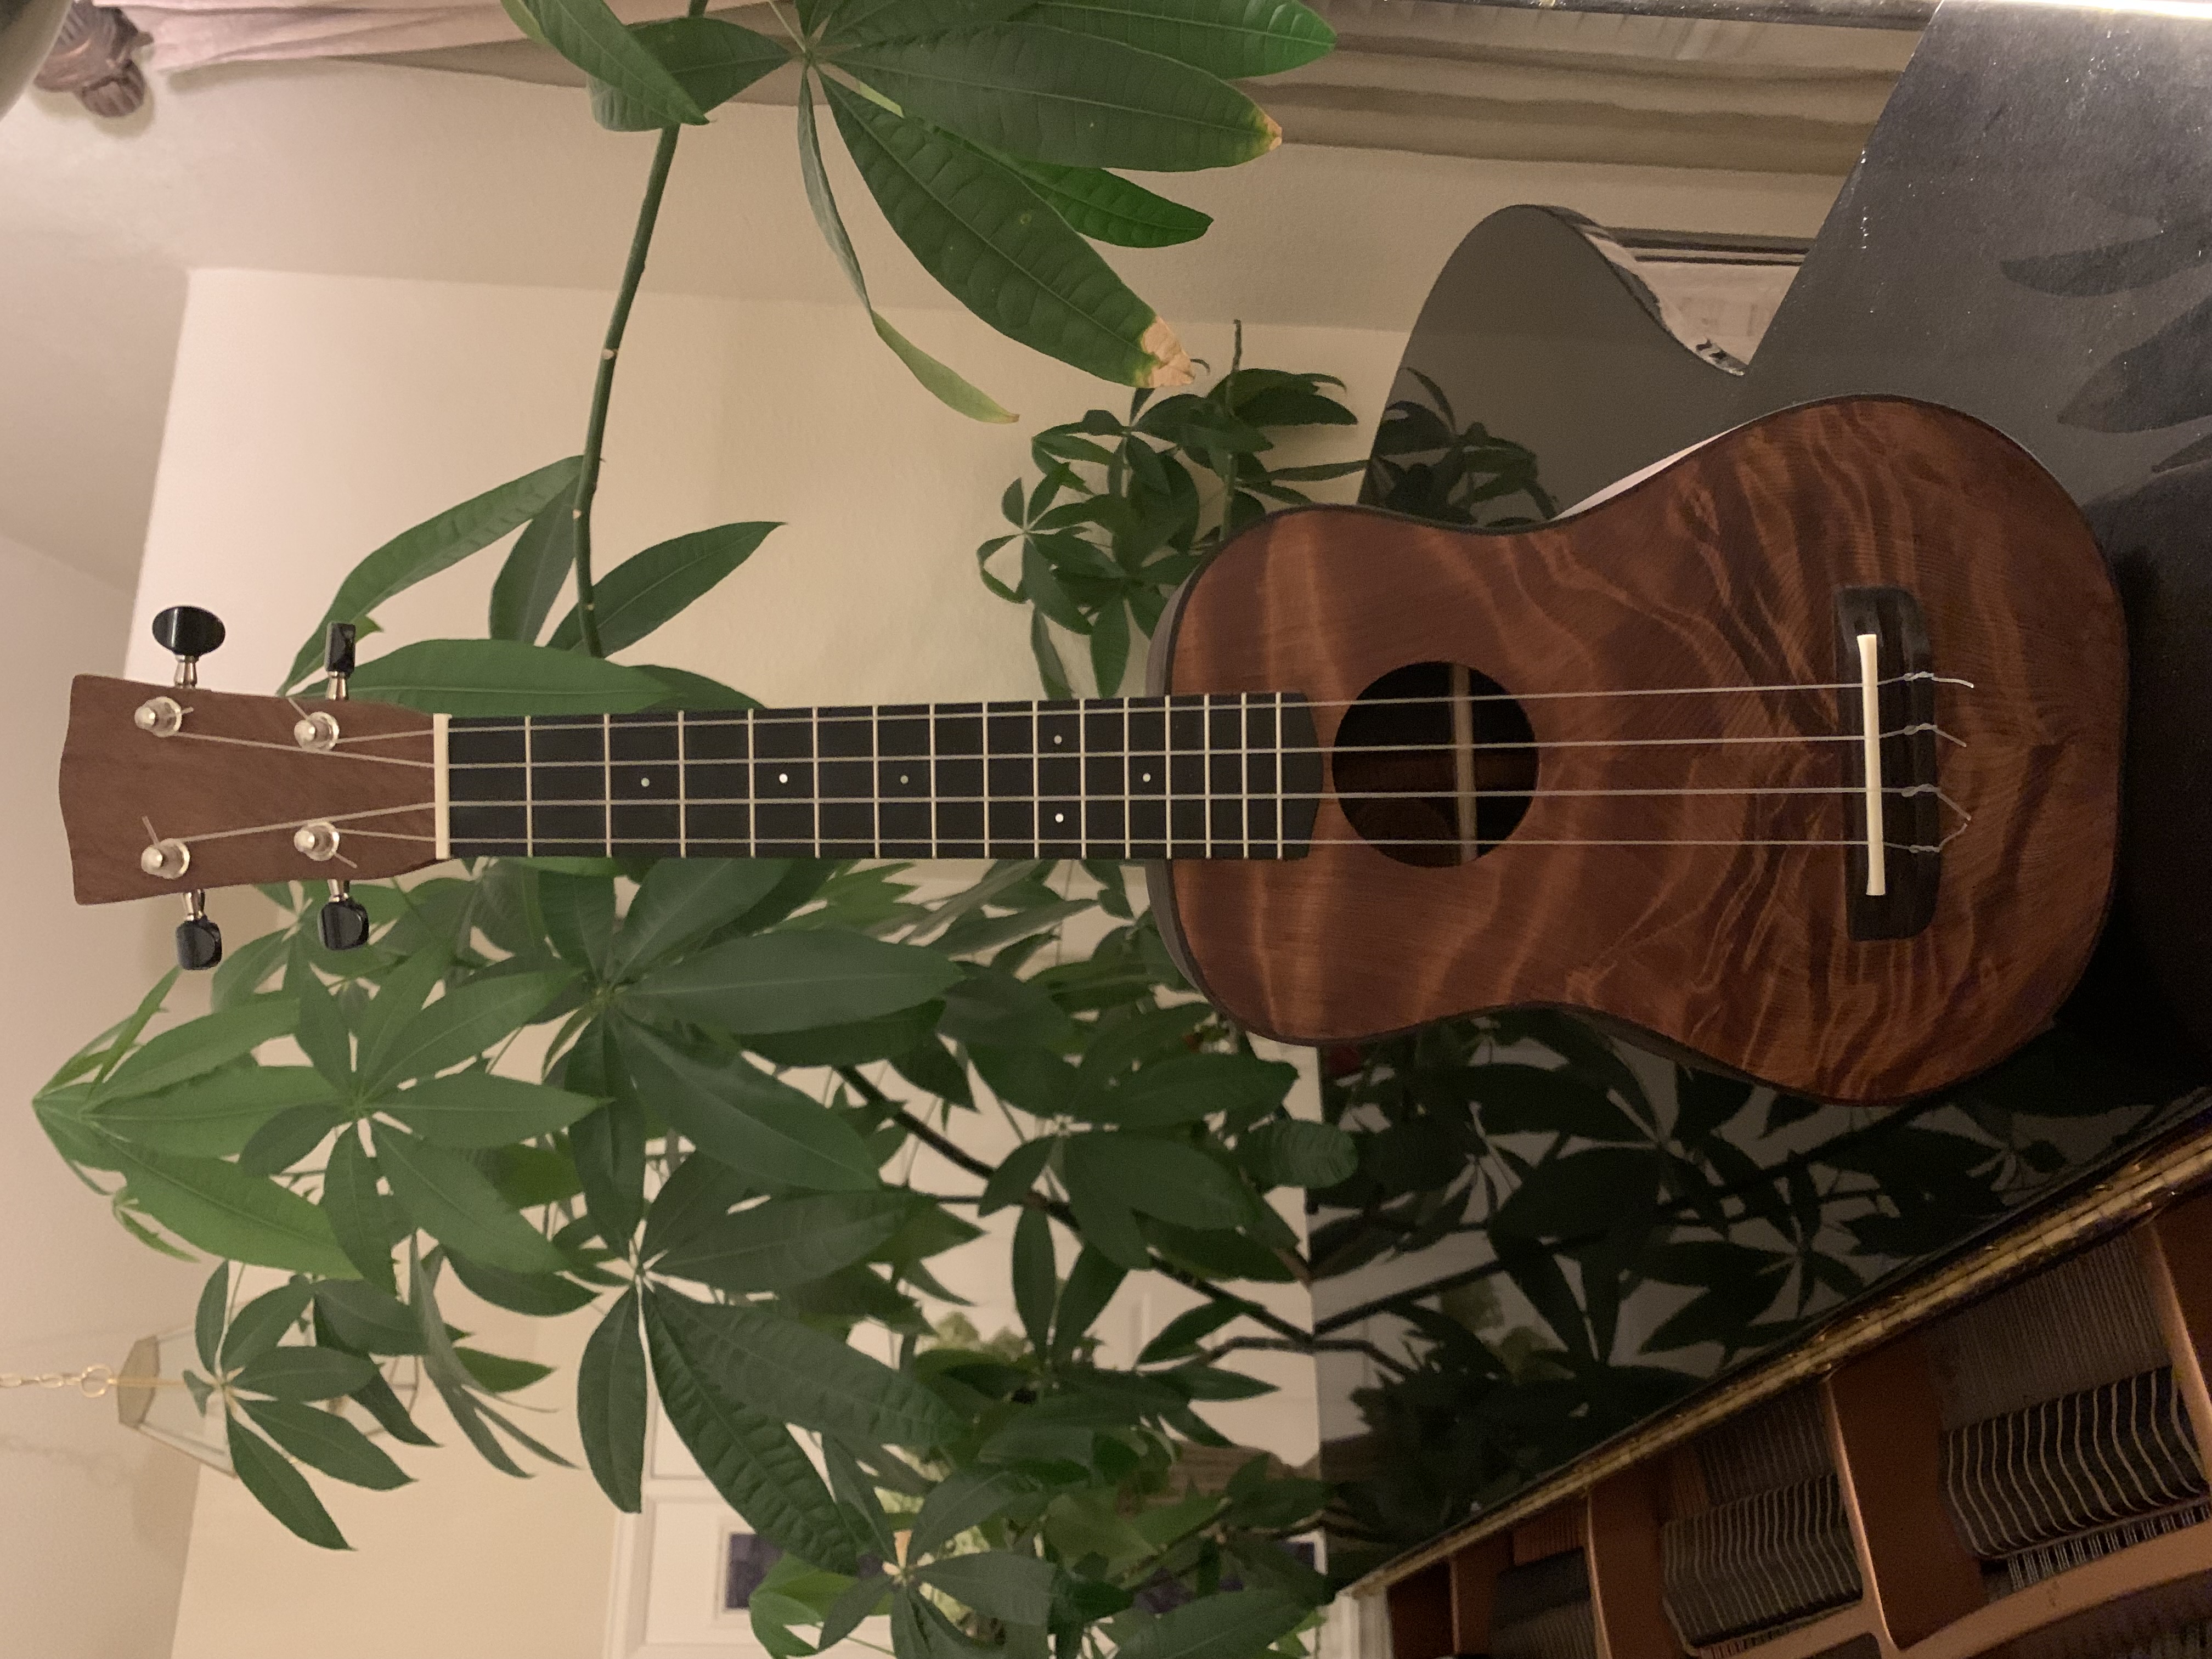 completed ukulele